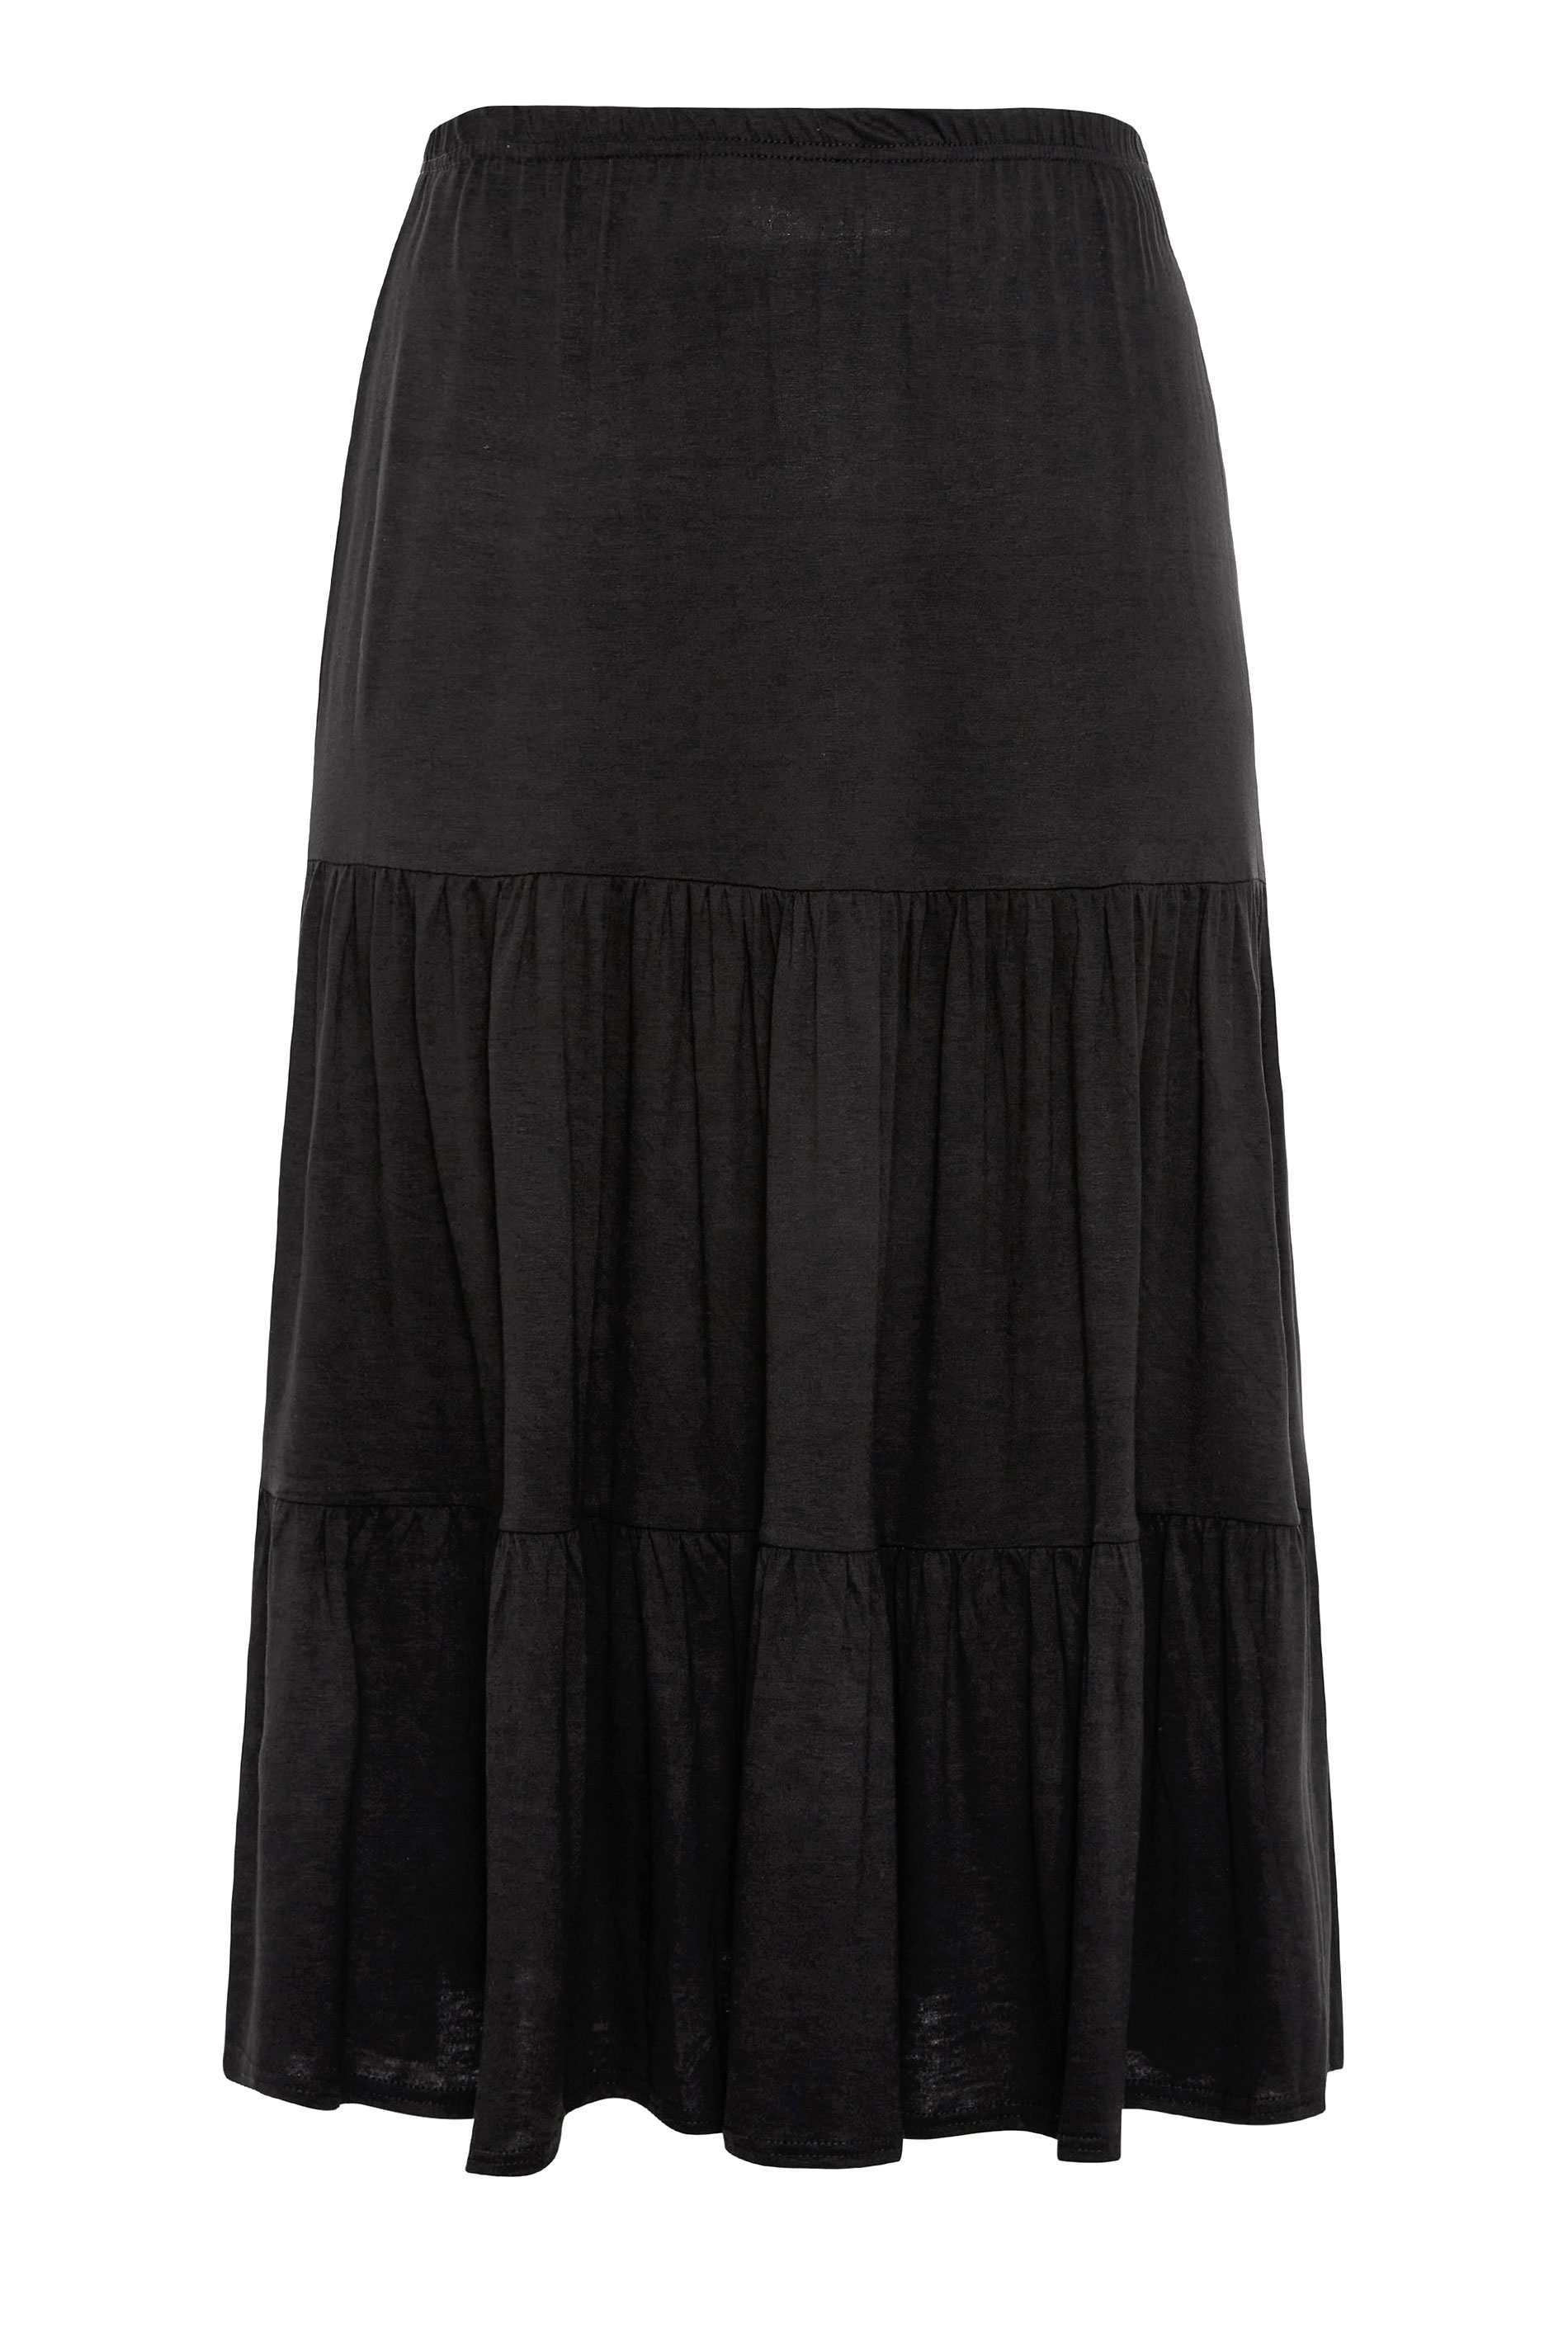 Plus Size Lange rok met stroken in zwart | Yours Clothing